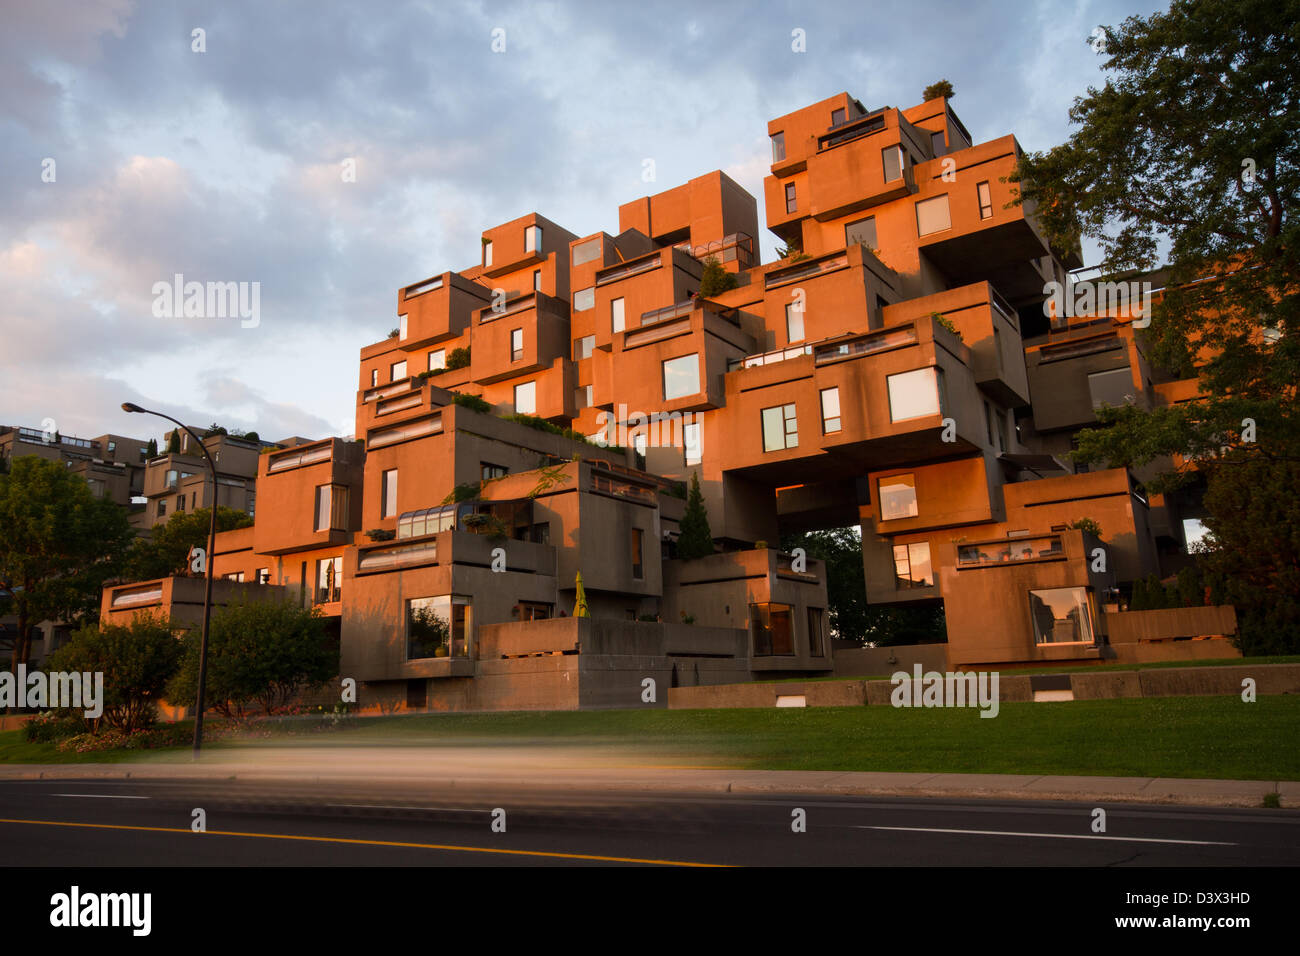 Habitat 67 ist eine Modell-Gemeinschaft und Wohnanlage in Montreal, Kanada vom Architekten Moshe Safdie entworfen. Stockfoto